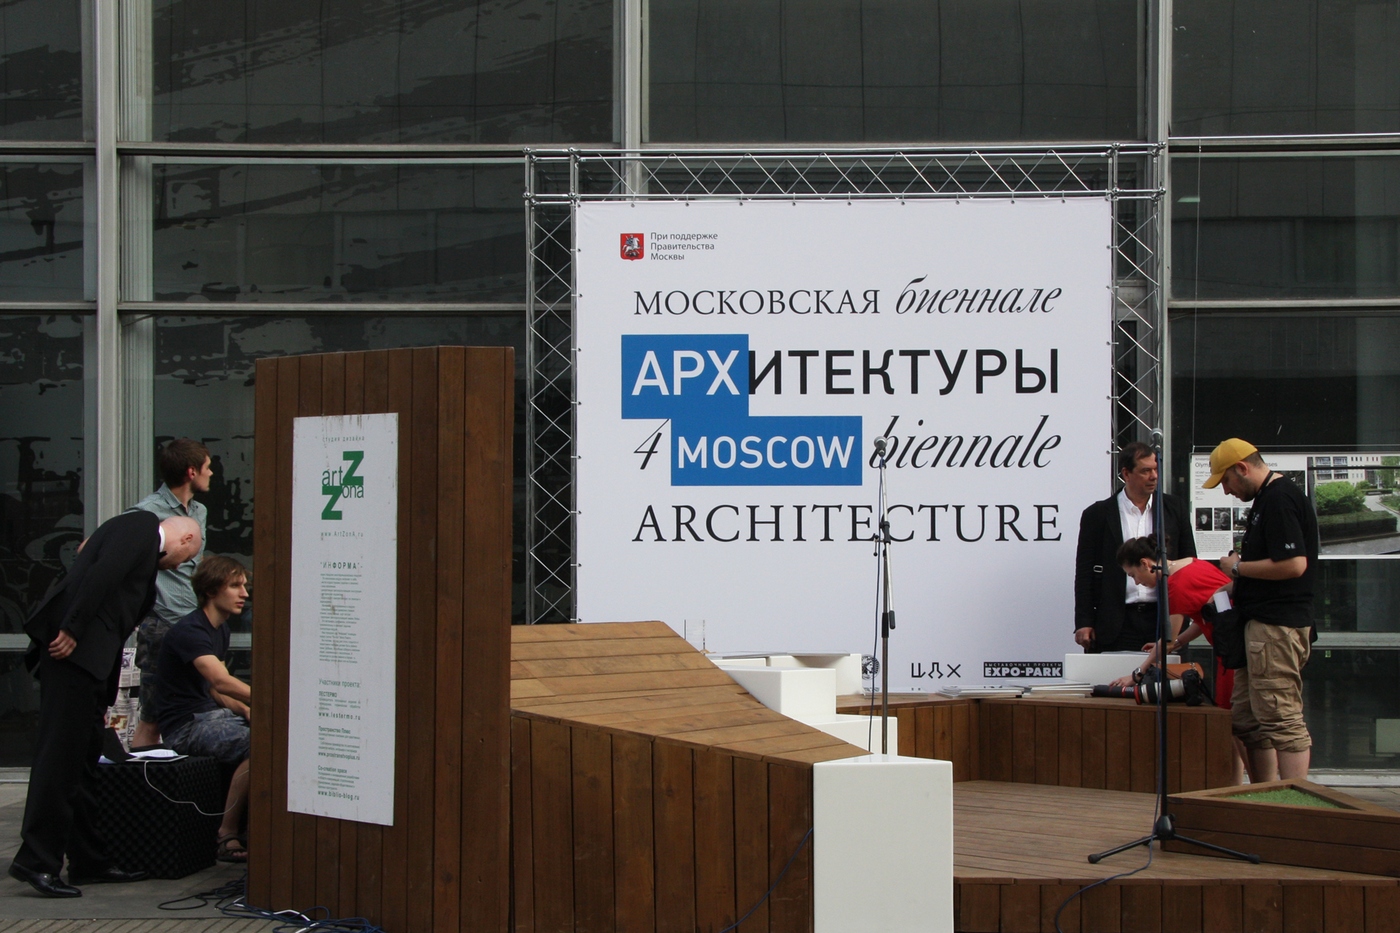 2014. Международная выставка архитектуры и дизайна Арх Москва. Информа использовалась в качестве площадки для награждения.